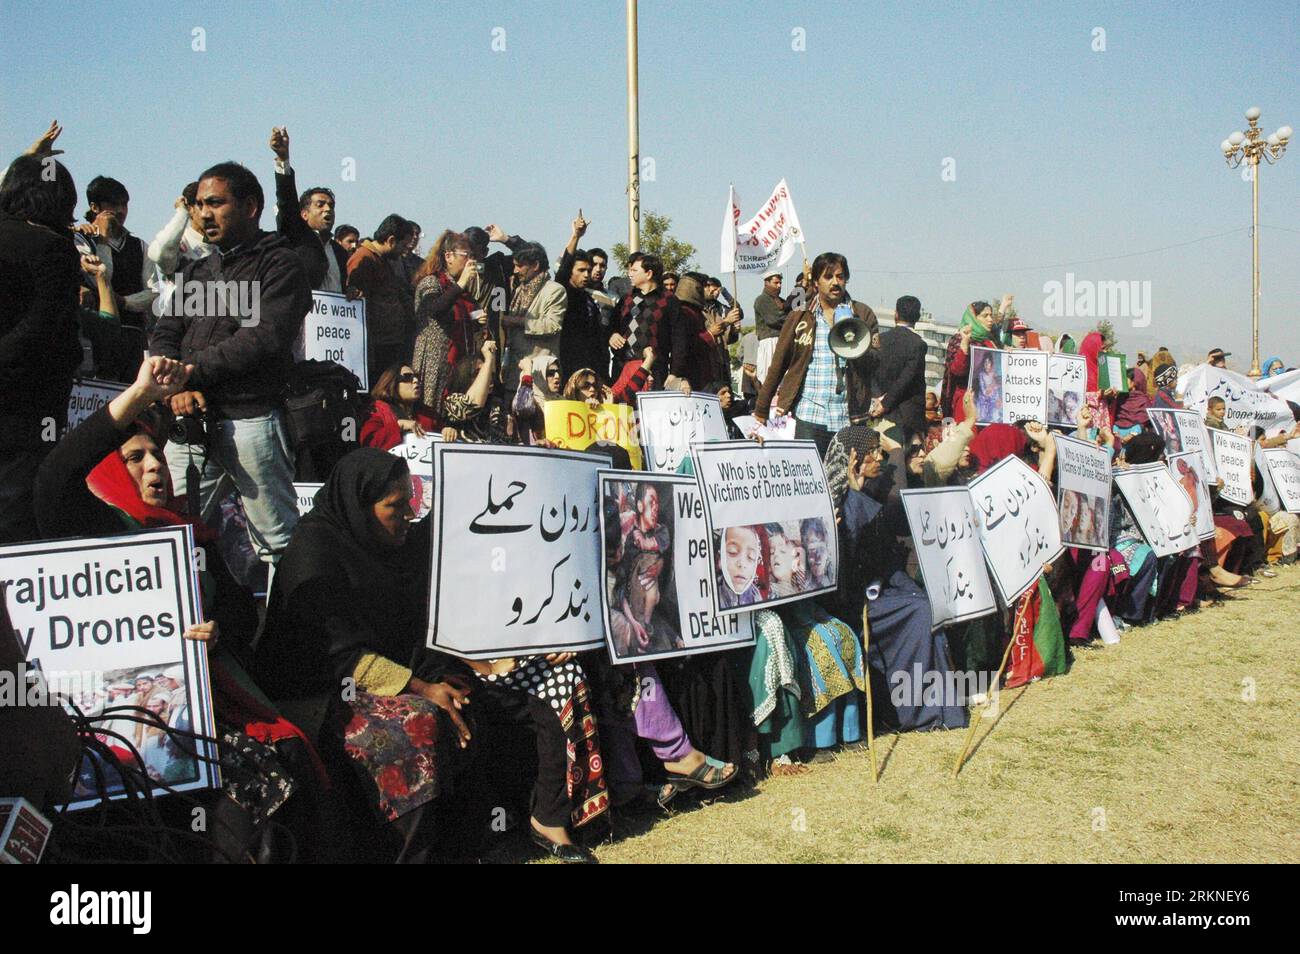 Bildnummer : 57109068 Datum : 25.02.2012 Copyright : imago/Xinhua (120225) -- ISLAMABAD, 25 février 2012 (Xinhua) -- des villageois tribaux pakistanais et des locaux participent à un rassemblement pour condamner les attaques de drones américains près de President House à Islamabad, capitale du Pakistan, le 25 février 2012. Des centaines de membres de tribus pakistanaises et leurs partisans politiques ont commencé samedi un sit-in de deux jours à Islamabad contre les frappes de drones américains dans les régions tribales. (Xinhua/Ahmad Kamal) (zx) PAKISTAN-ISLAMABAD-RALLYE-États-Unis DRONE PUBLICATIONxNOTxINxCHN Politik Demo Protest USA Drohne Unbemannte Drohnenangriff Angriff premiumd Banque D'Images